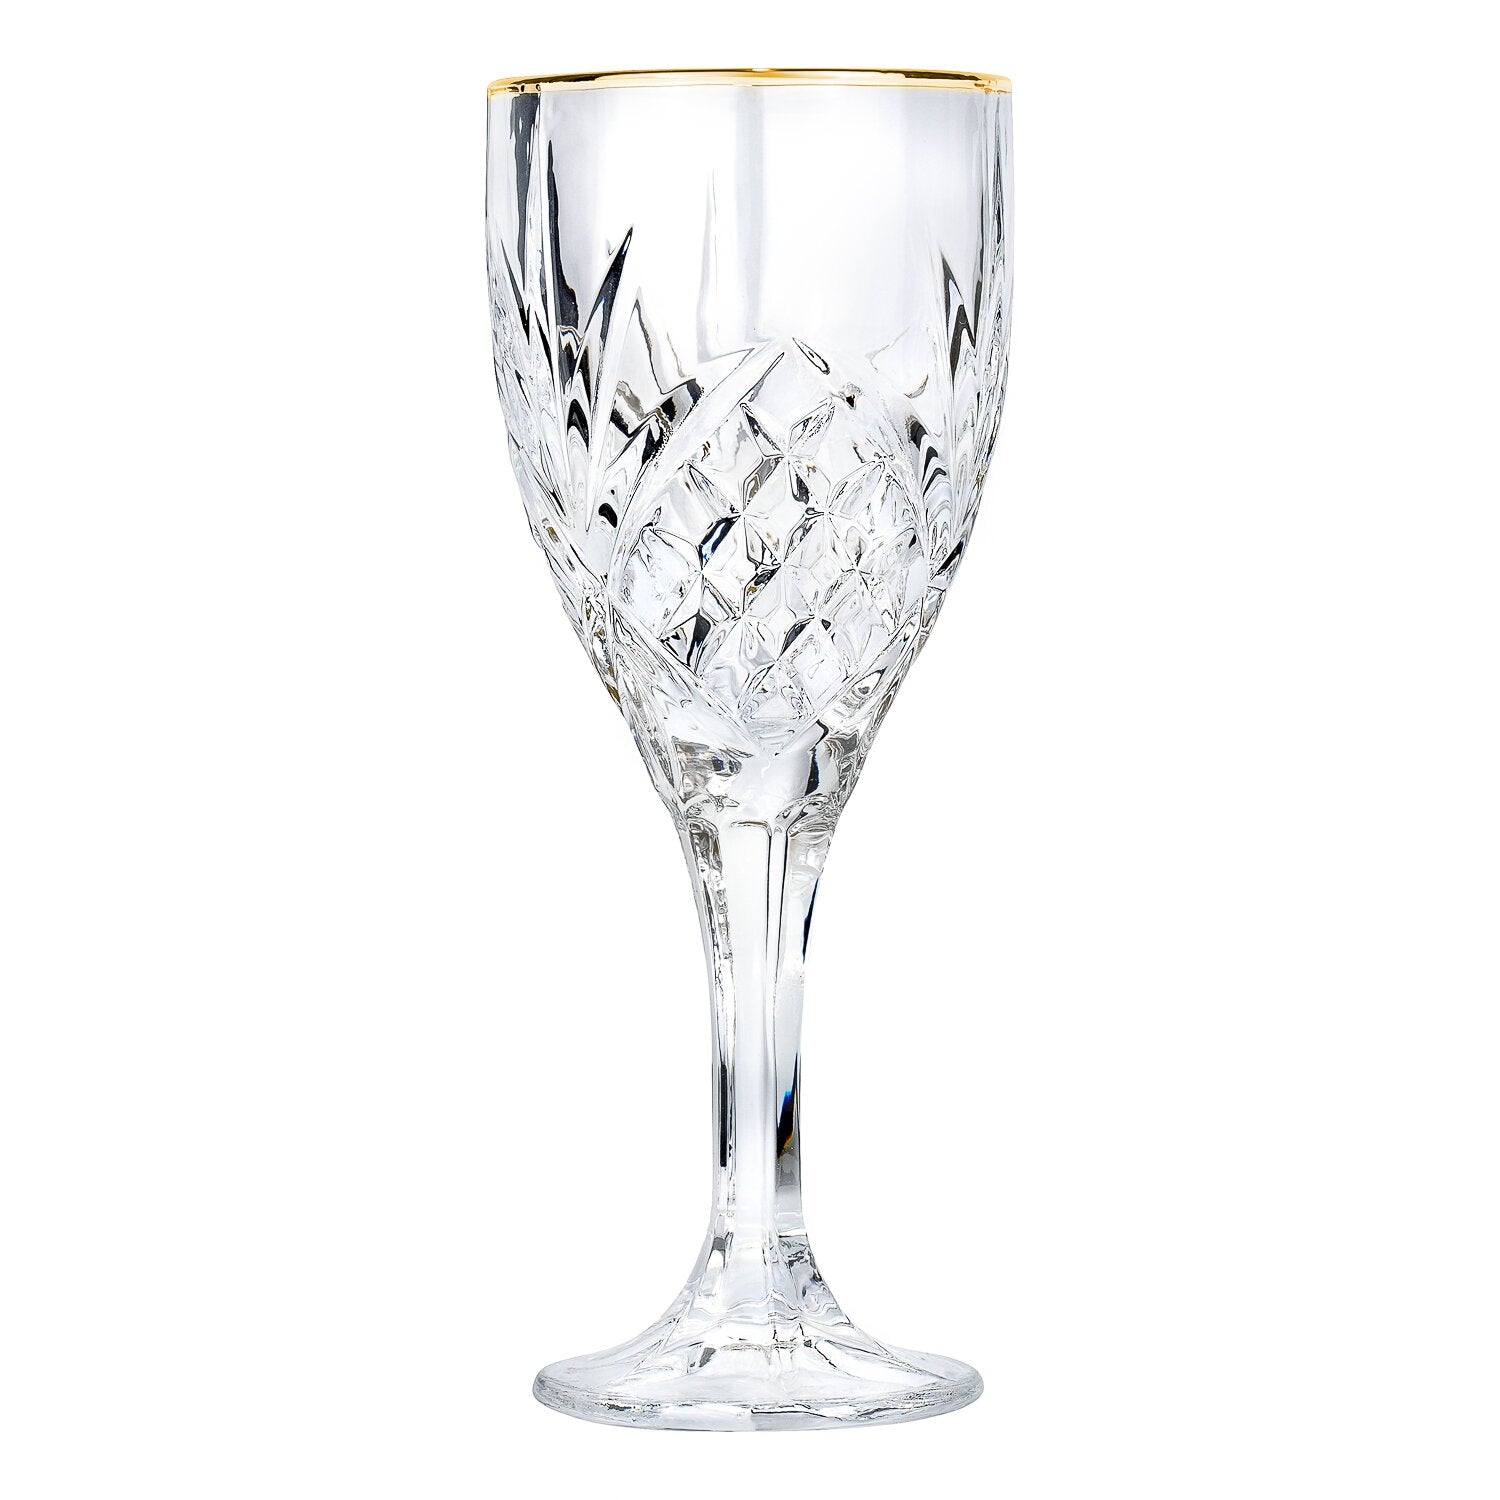 Metallic Grey Brass Wine Glasses at Best Price in Mumbai